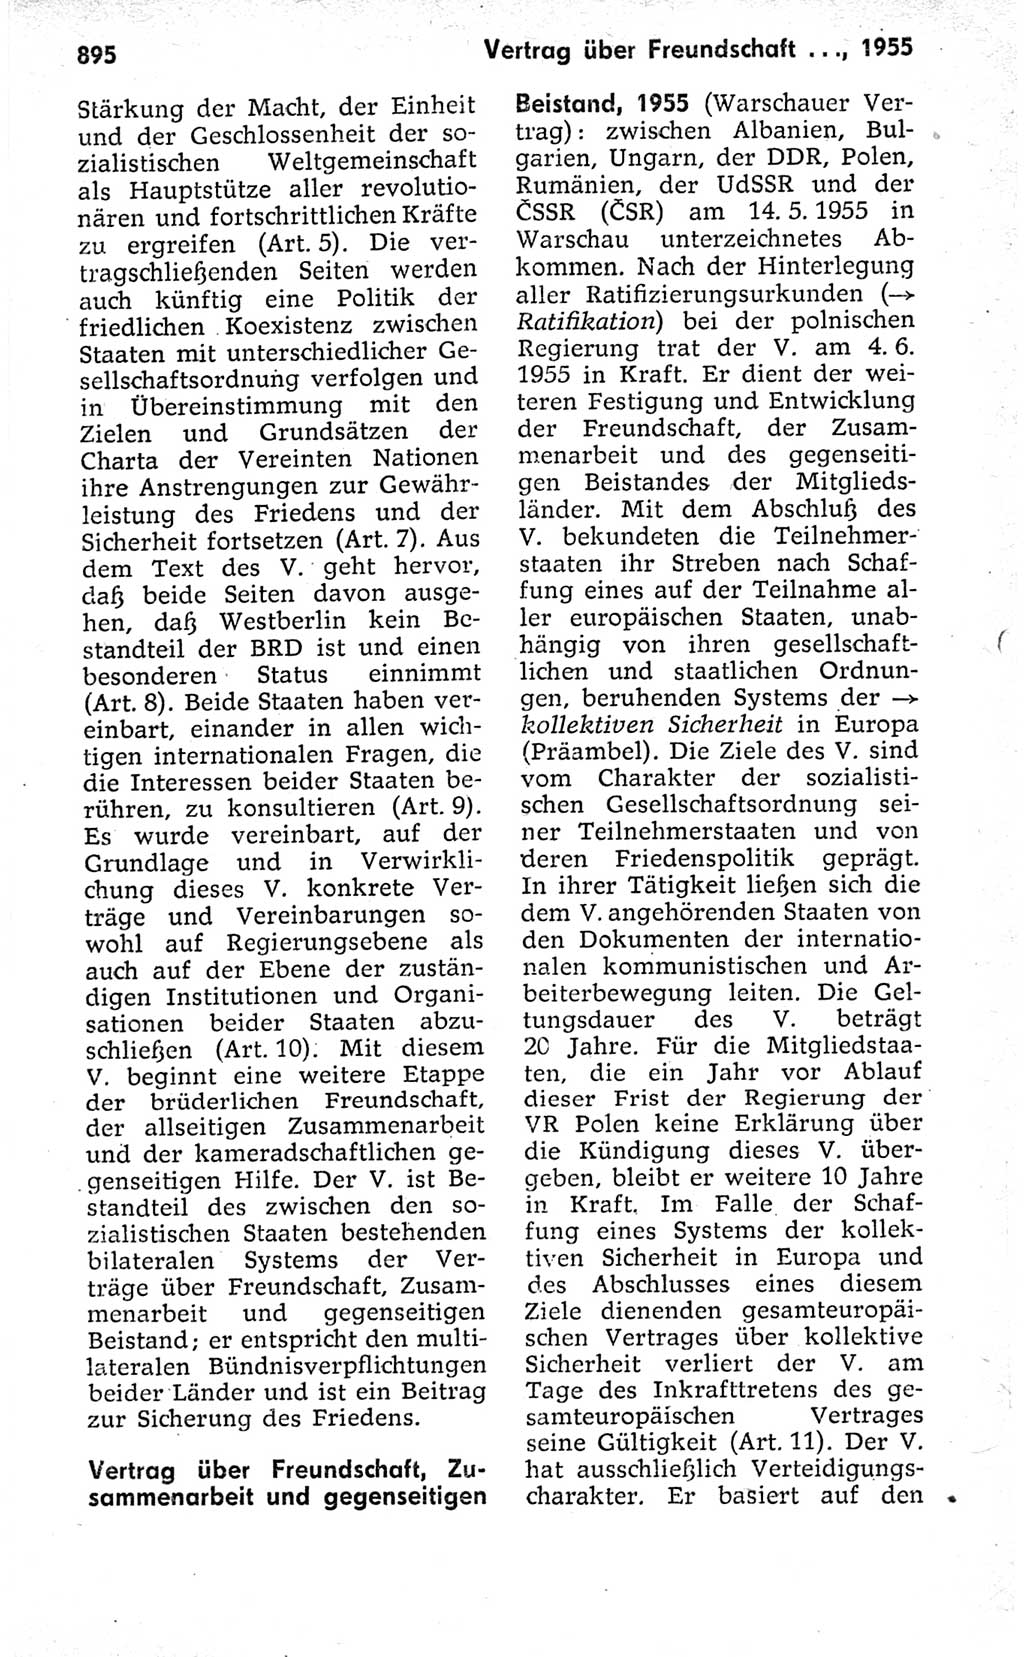 Kleines politisches Wörterbuch [Deutsche Demokratische Republik (DDR)] 1973, Seite 895 (Kl. pol. Wb. DDR 1973, S. 895)